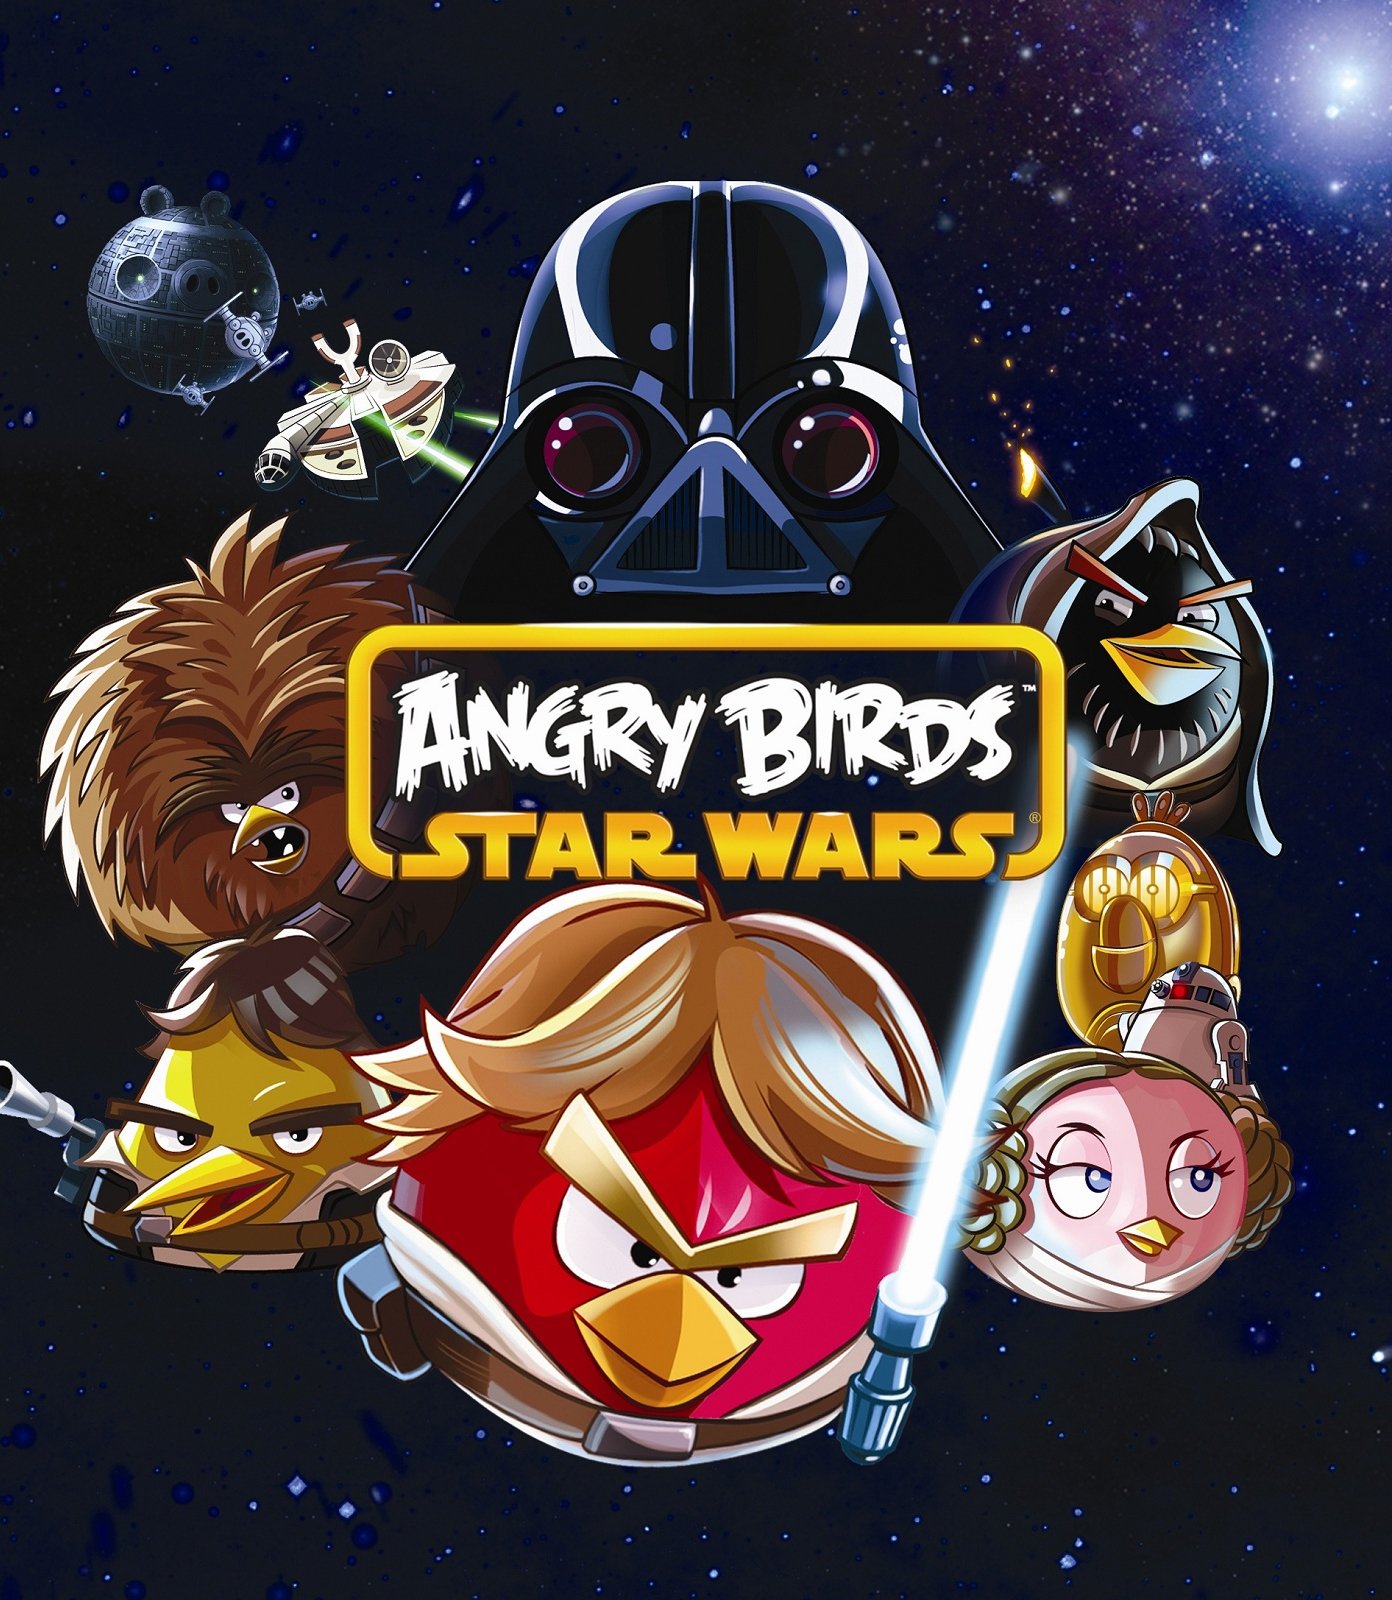 Angry birds star wars андроид. Игра Angry Birds Star Wars 2. Angry Birds Star Wars Xbox 360 обложка. Звёздные войны птички Angry Birds. Игра Angry Birds Star Wars 1.